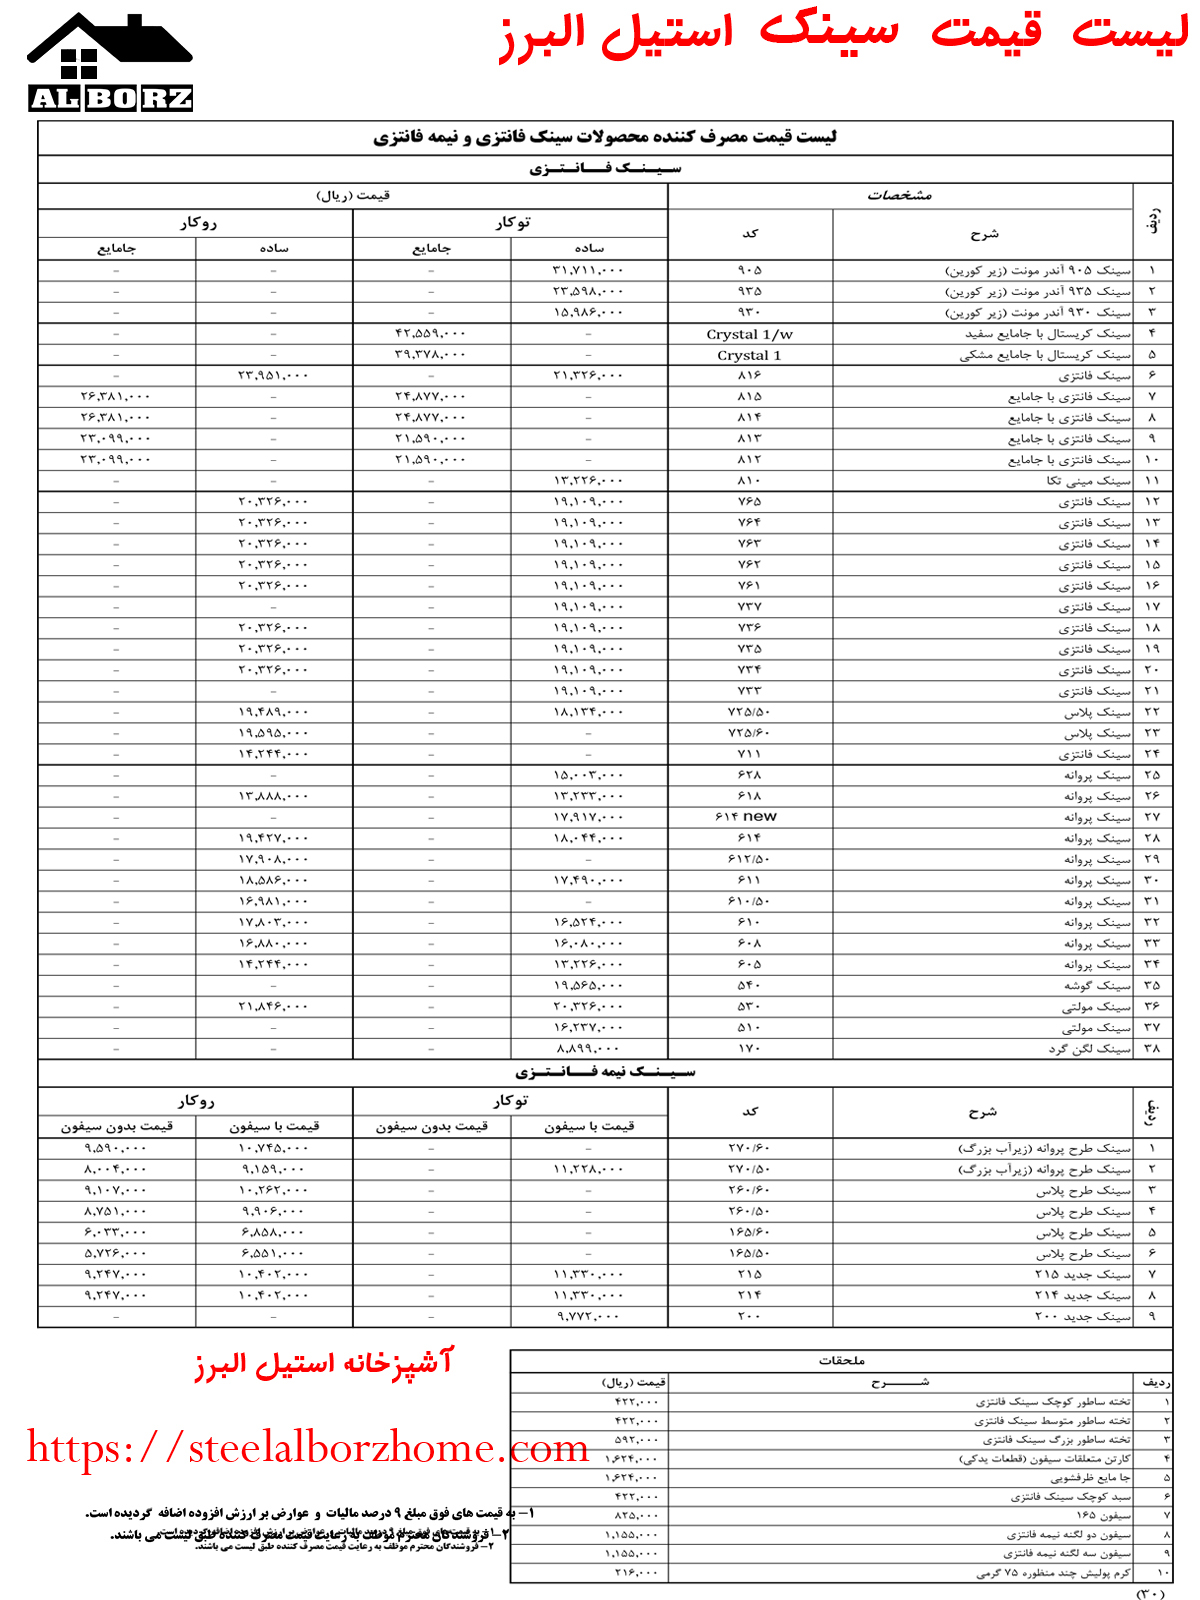 آخرین لیست قیمت استیل البرز